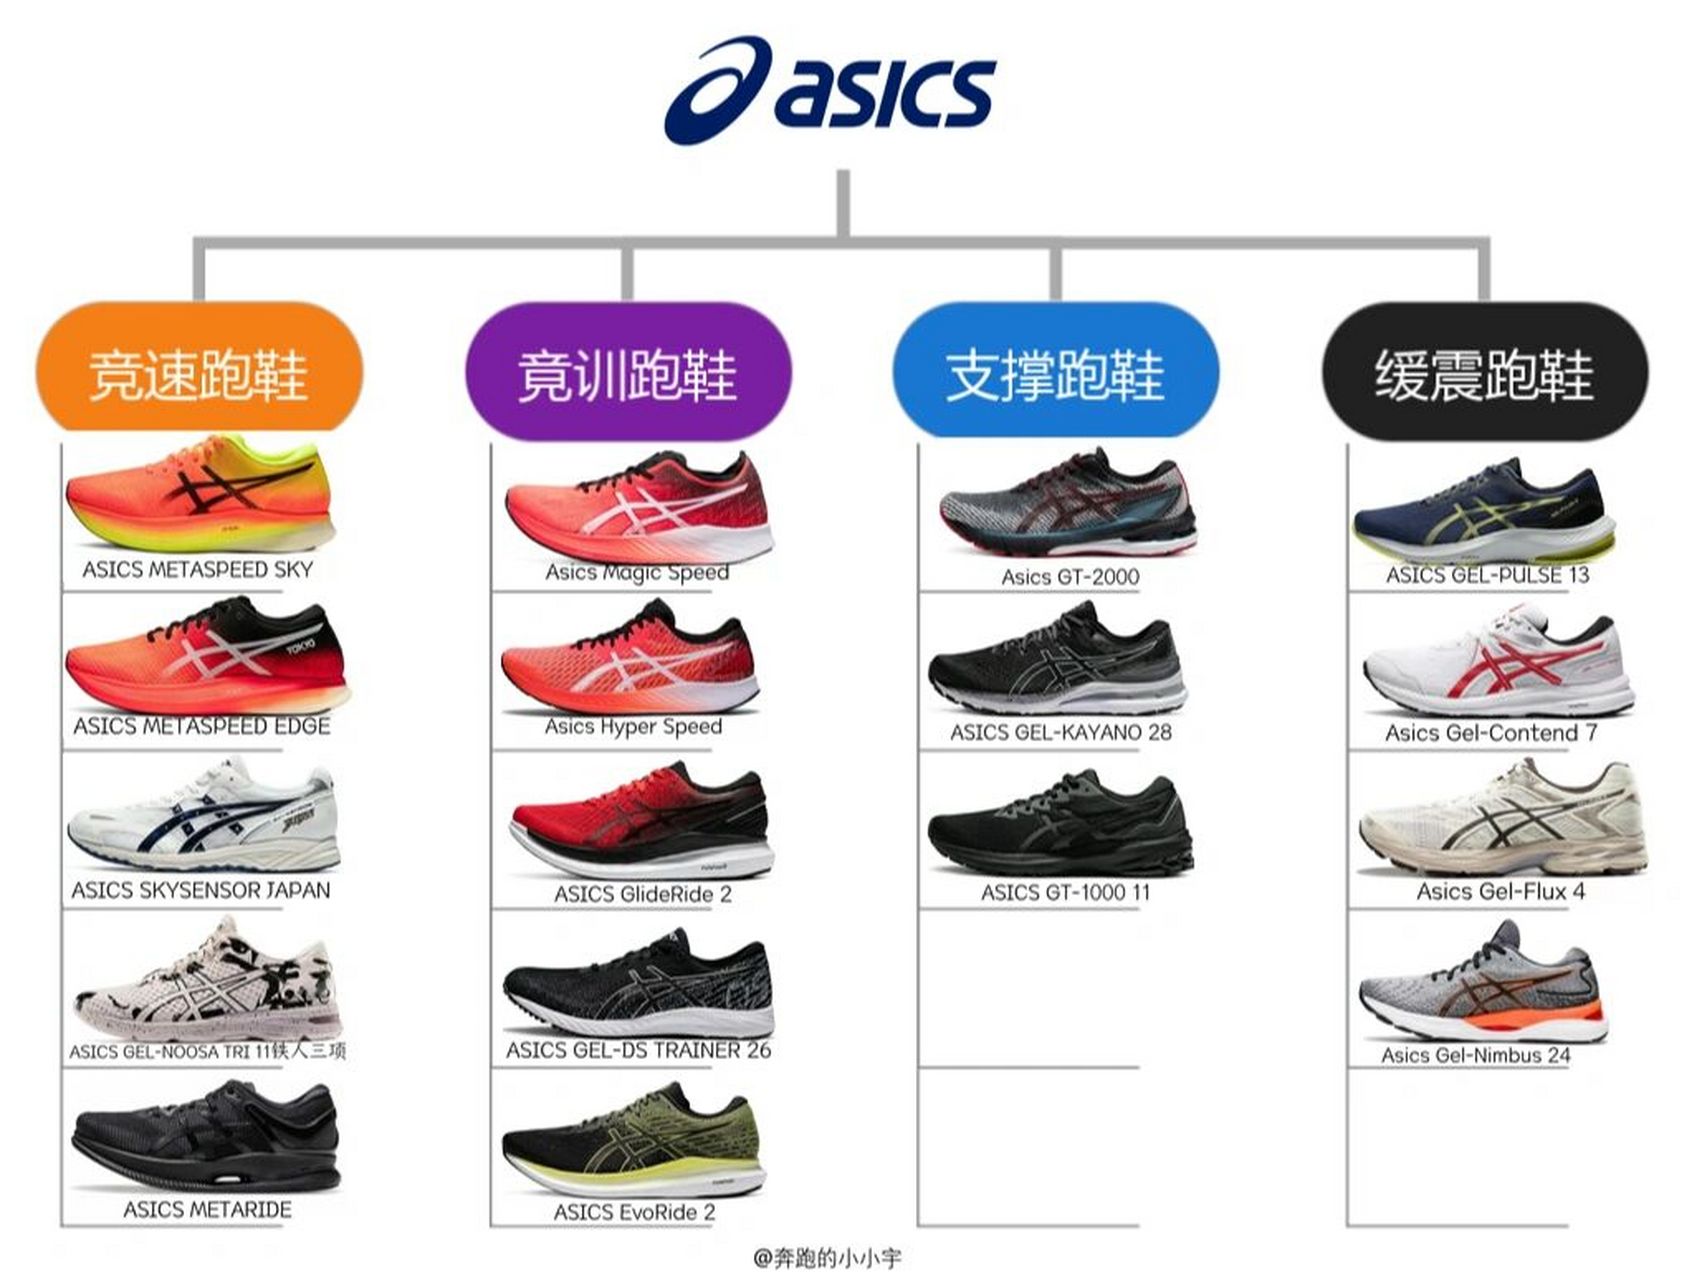 品牌介绍:asics(亚瑟士)是日本实业家鬼冢喜八郎创立的跑鞋运动品牌